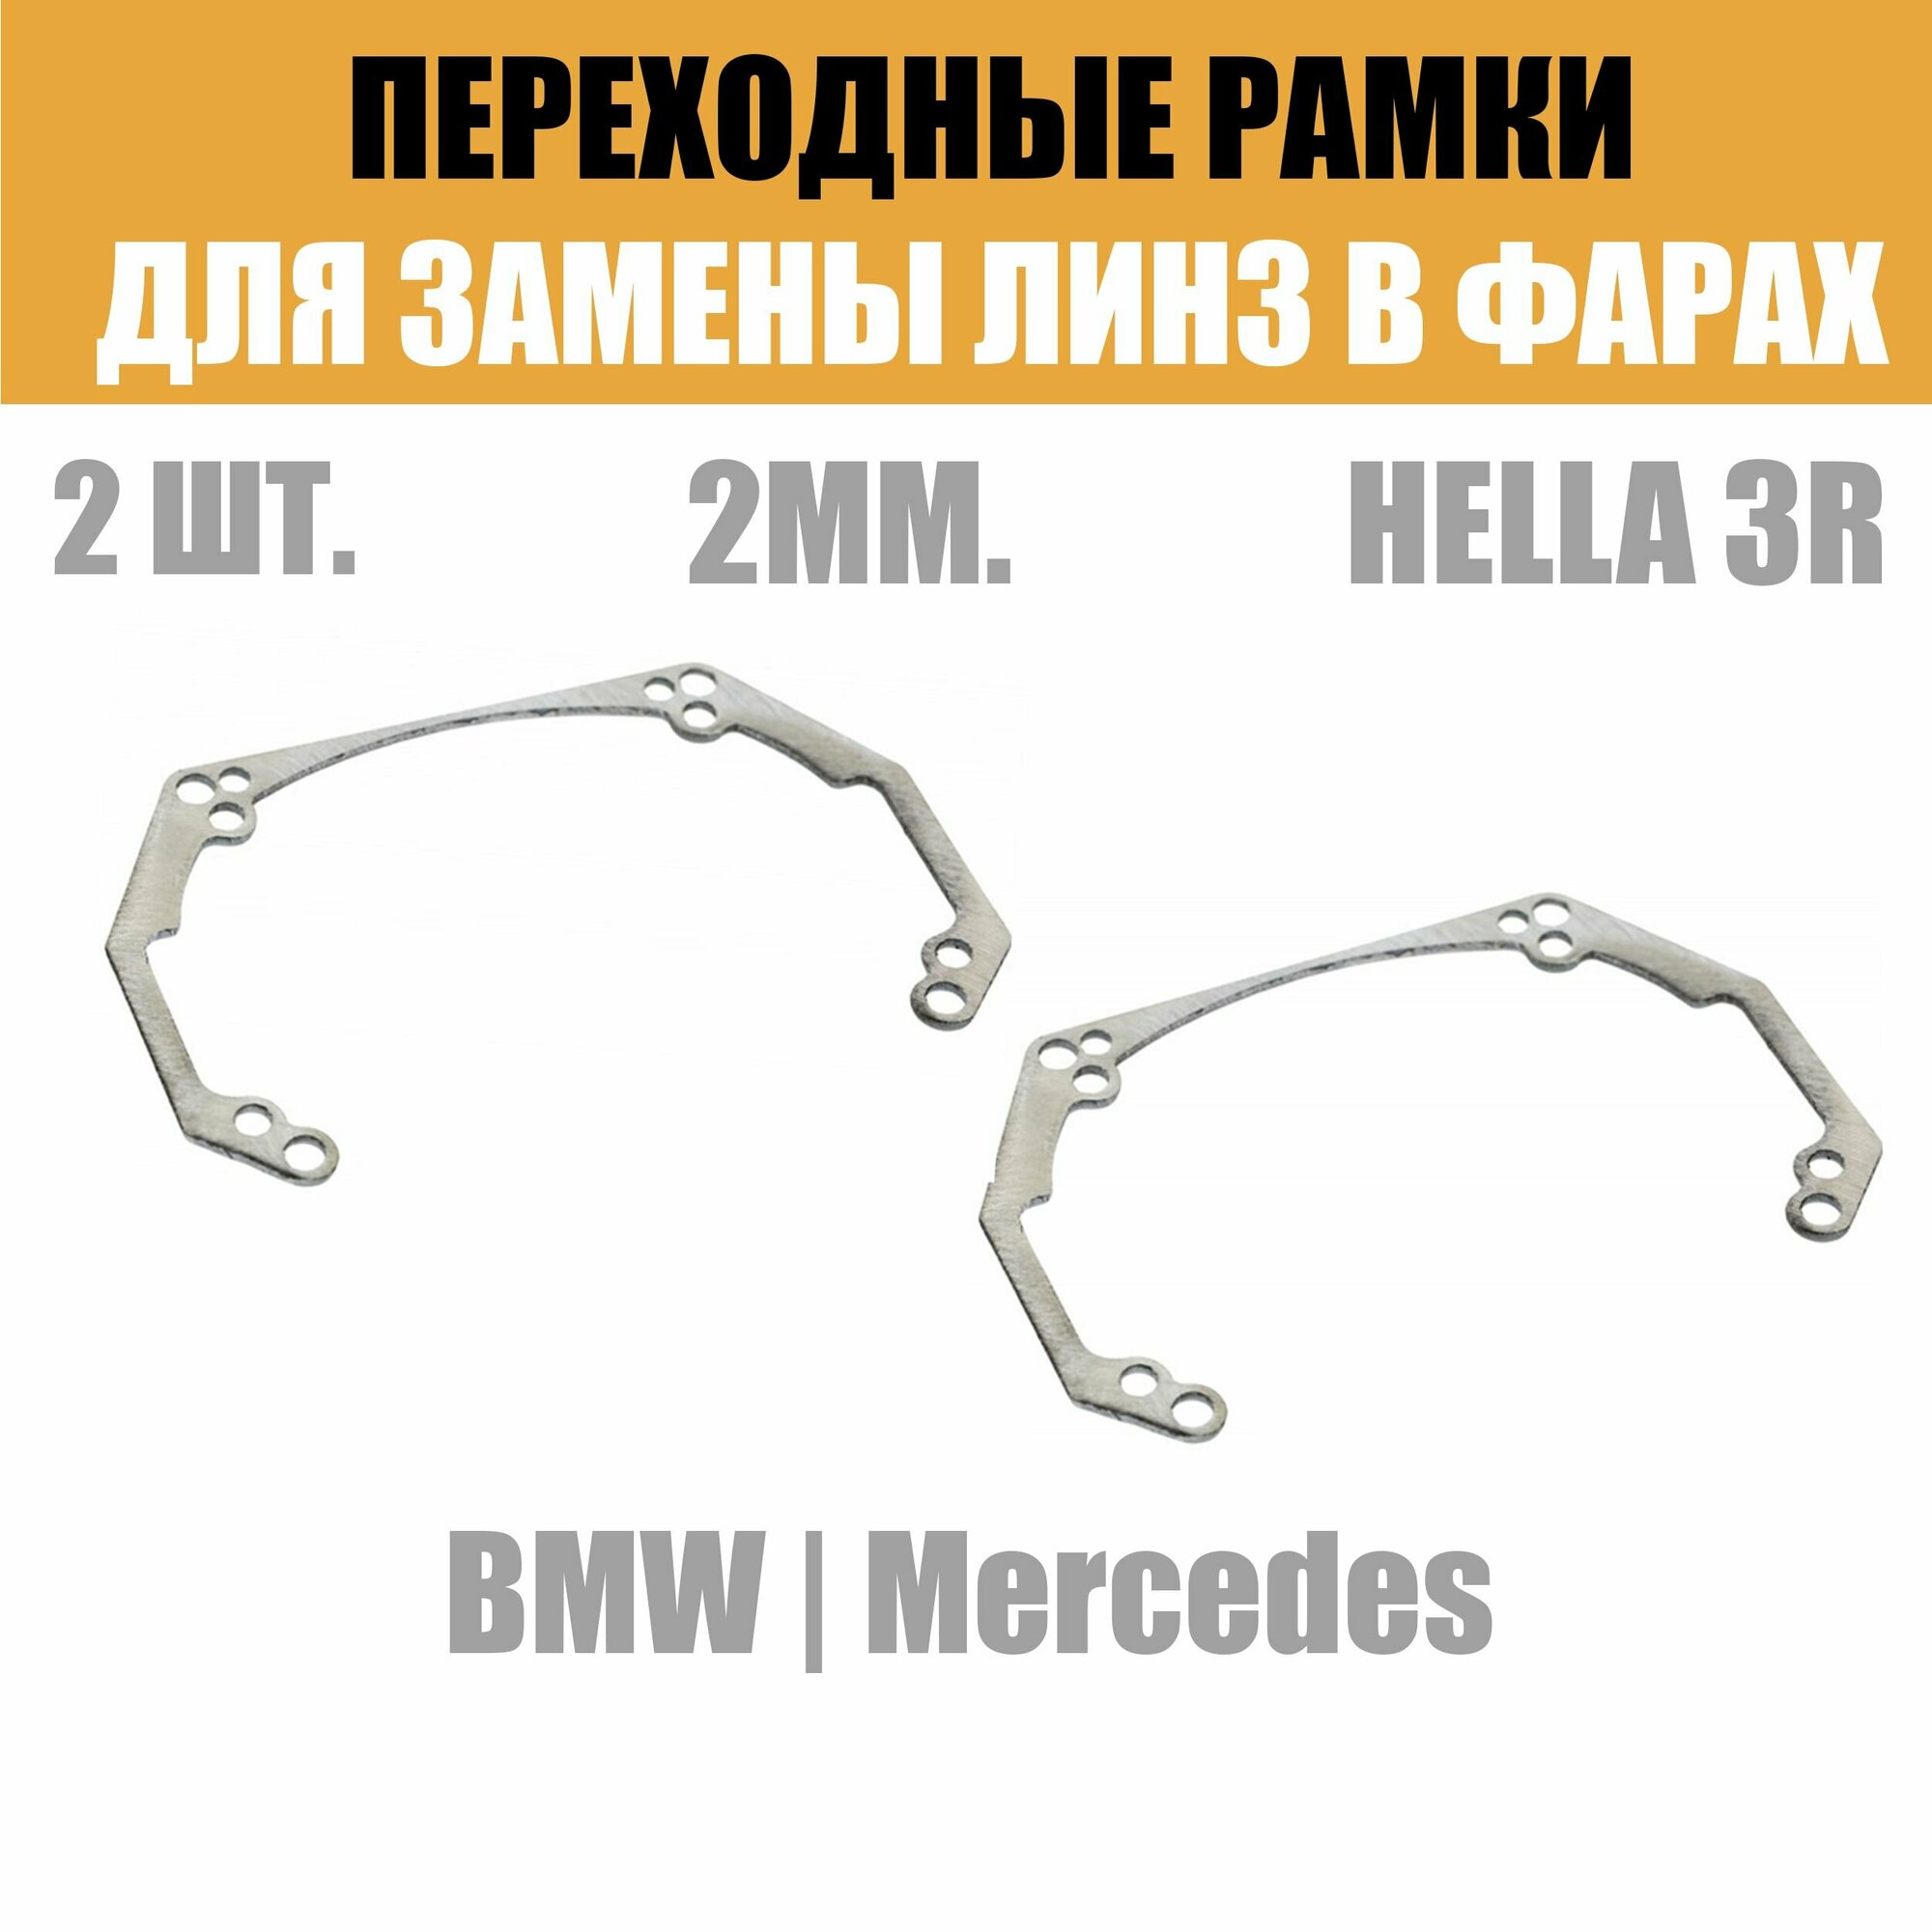 Переходные рамки для линз №41 на BMW ZKW Mercedes под модуль Hella 3R/Hella 3 (Комплект 2шт)